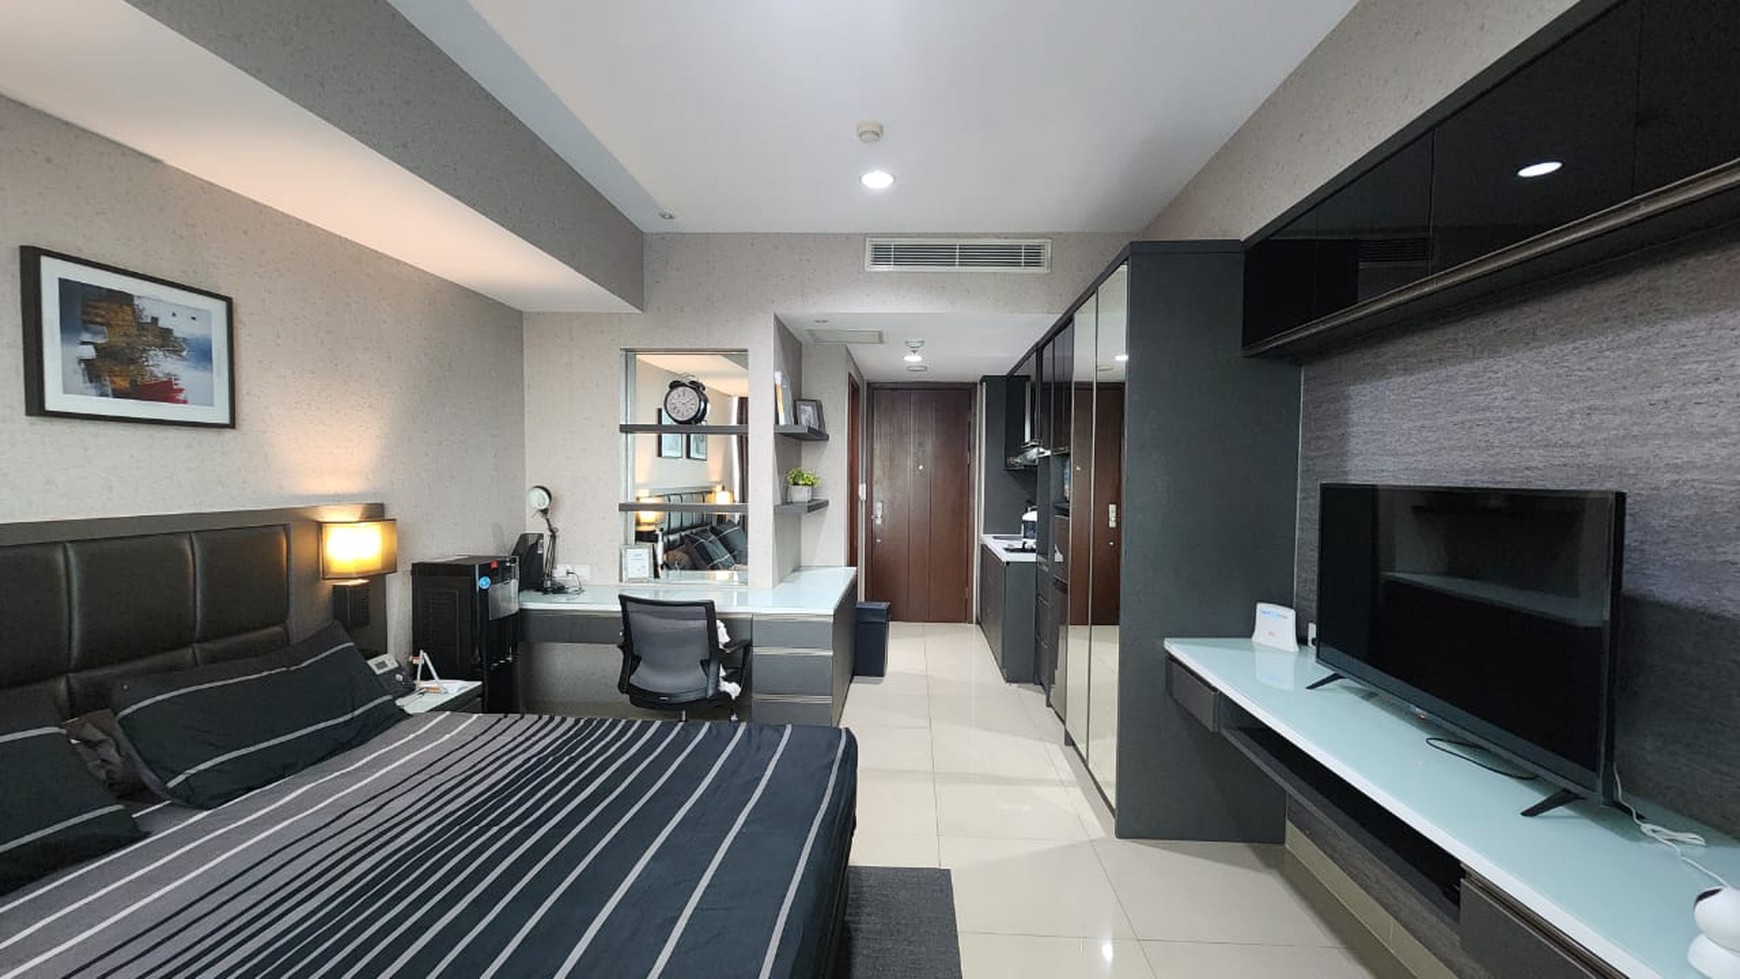 Dijual Apartemen bagus, luxury di U-residence Tower 2 lippo karawaci Tangerang